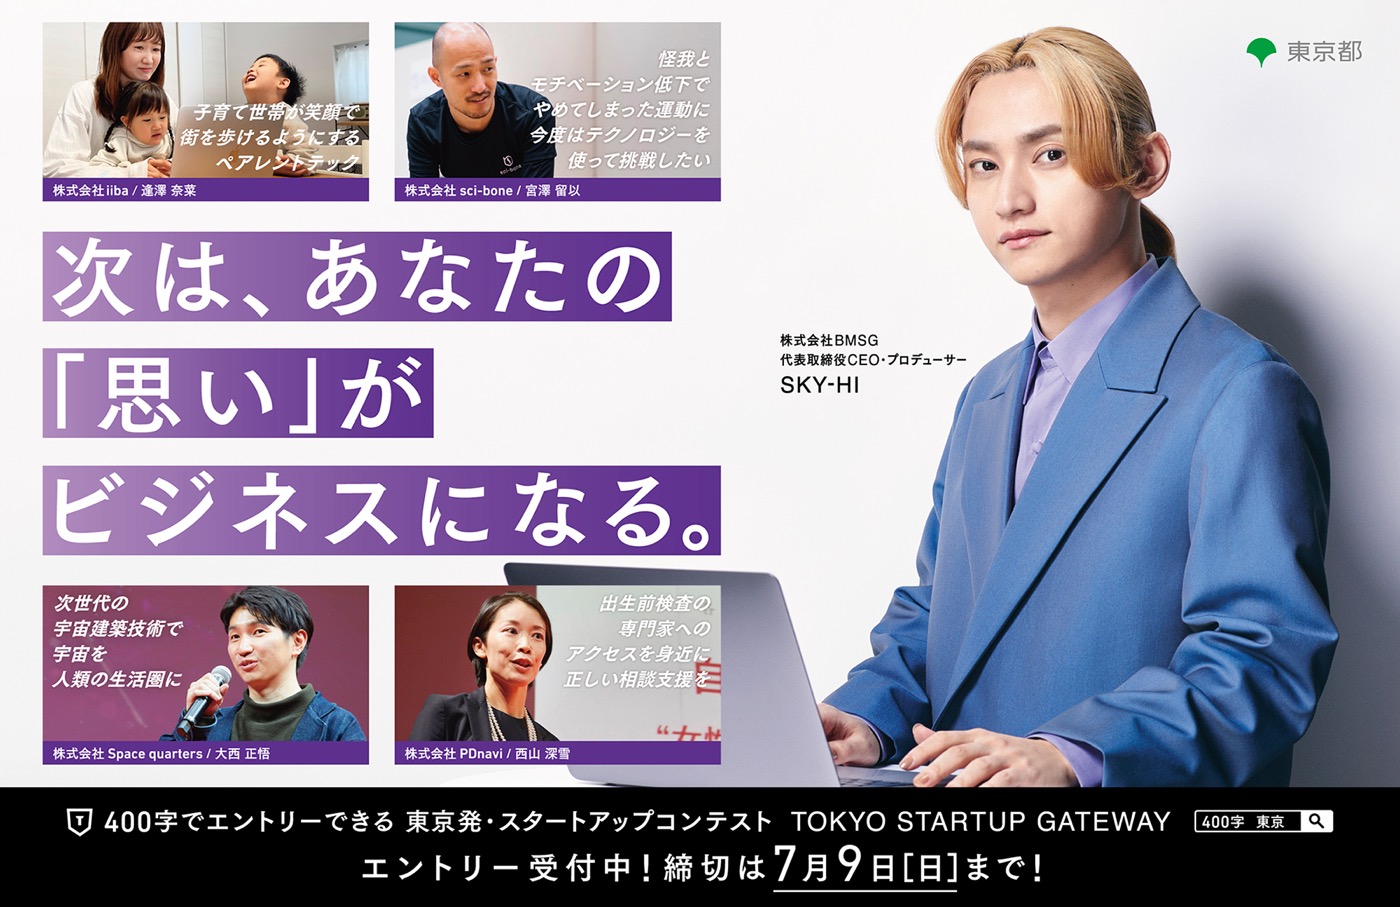 SKY-HI、起業を応援する東京都主催スタートアップコンテストの動画やポスターに登場